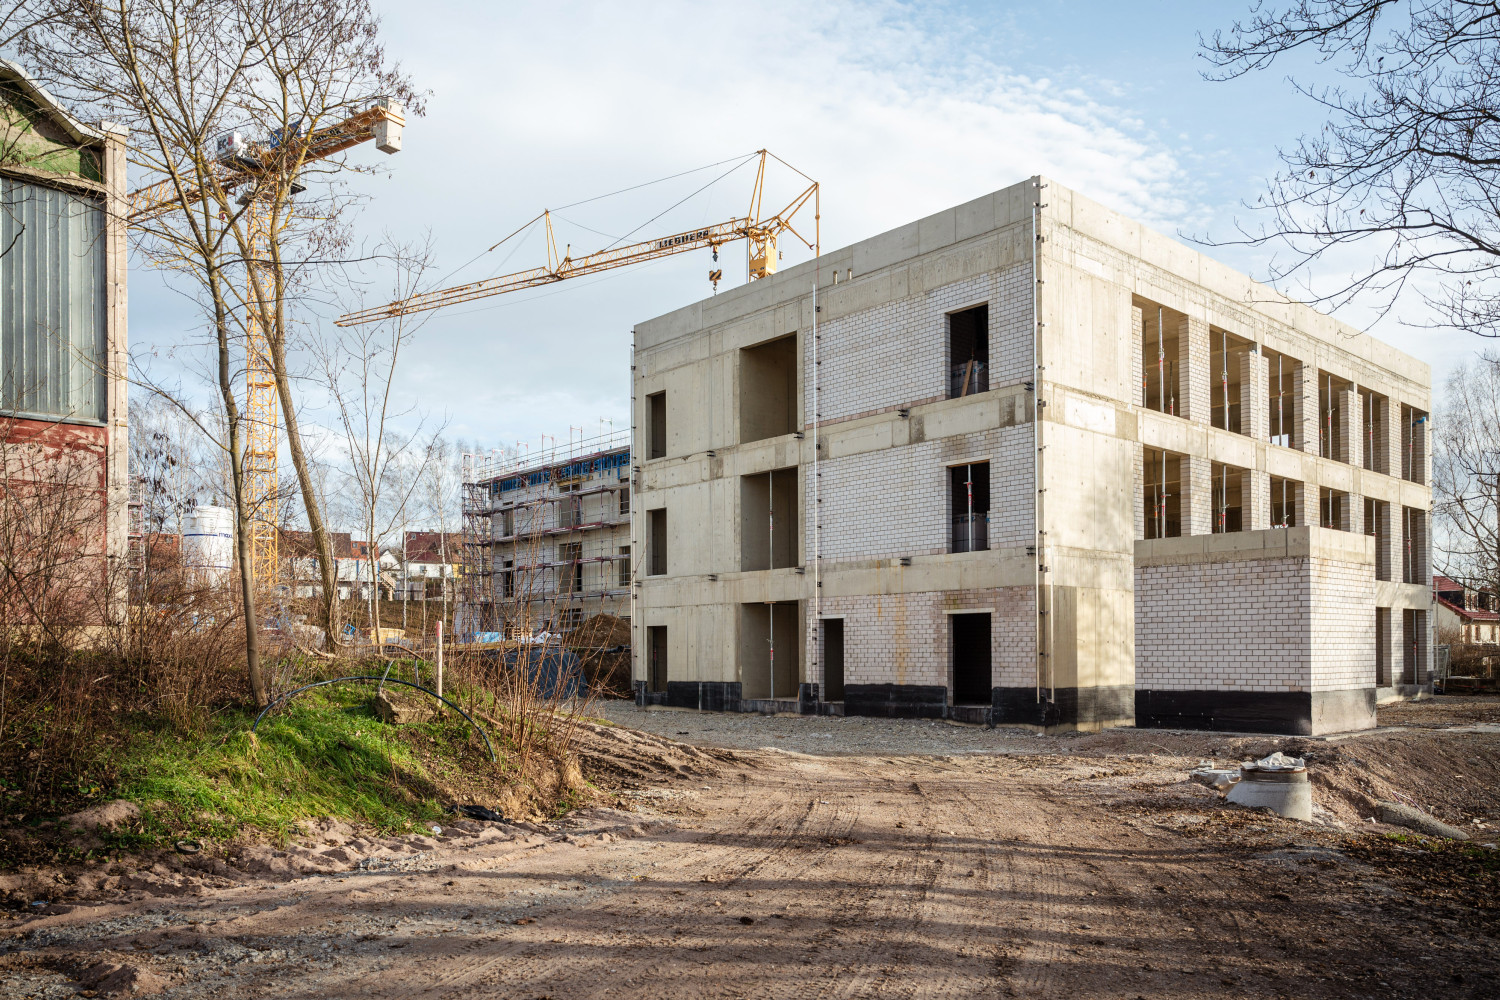 Blick auf einen der Rohbaue des Neubaus der Schule am Hartwege Weimar mit den bodentiefen Fenstern